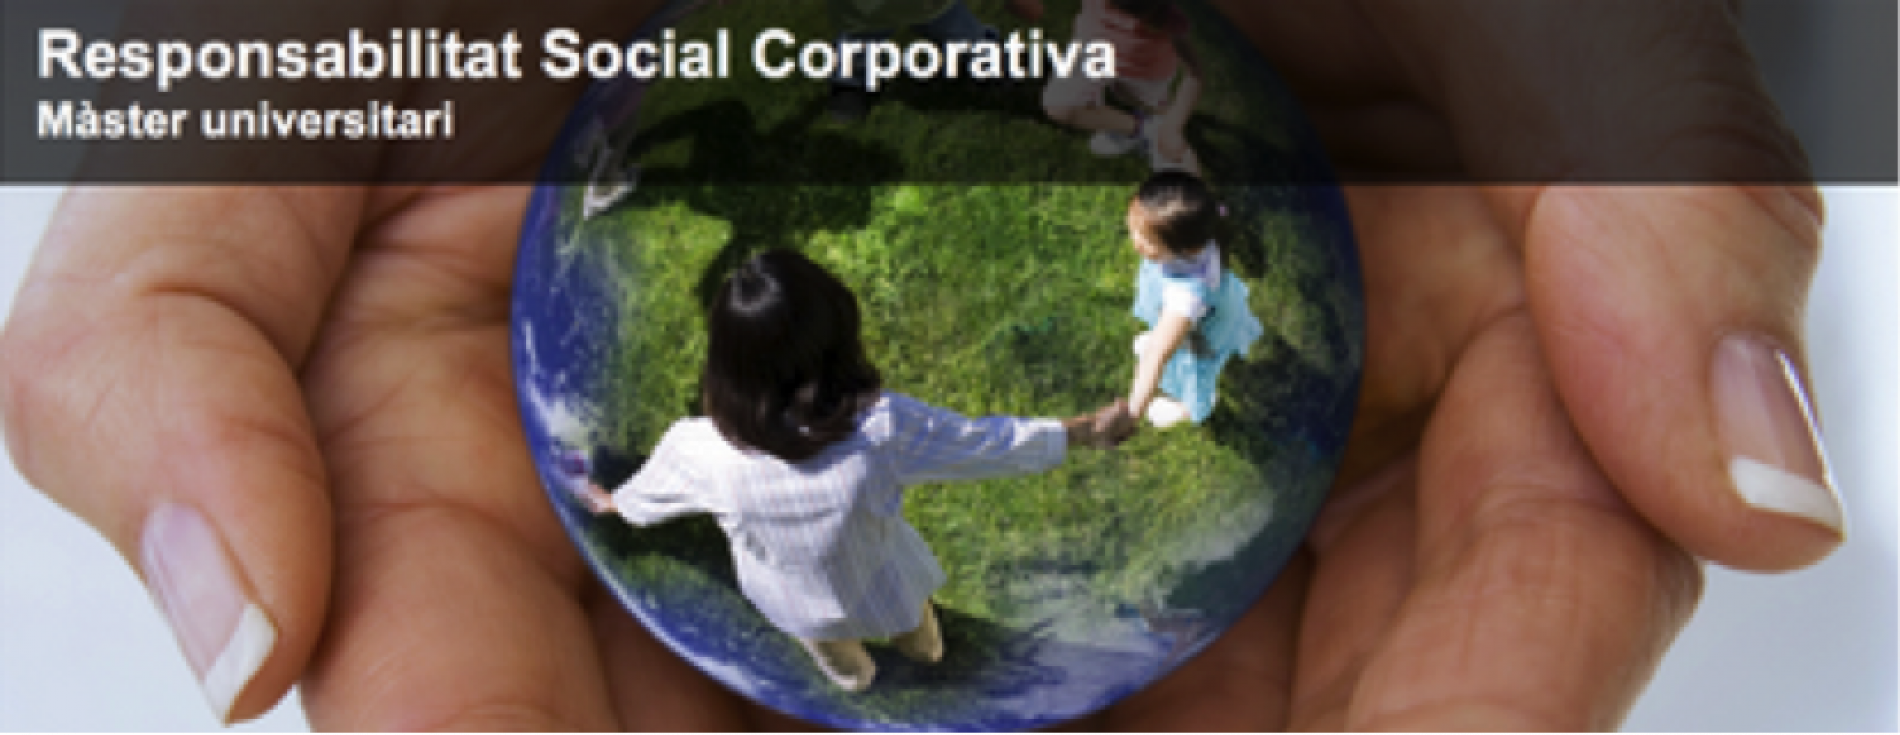 Nova convocatòria del Màster universitari en Responsabilitat Social on line a la UOC